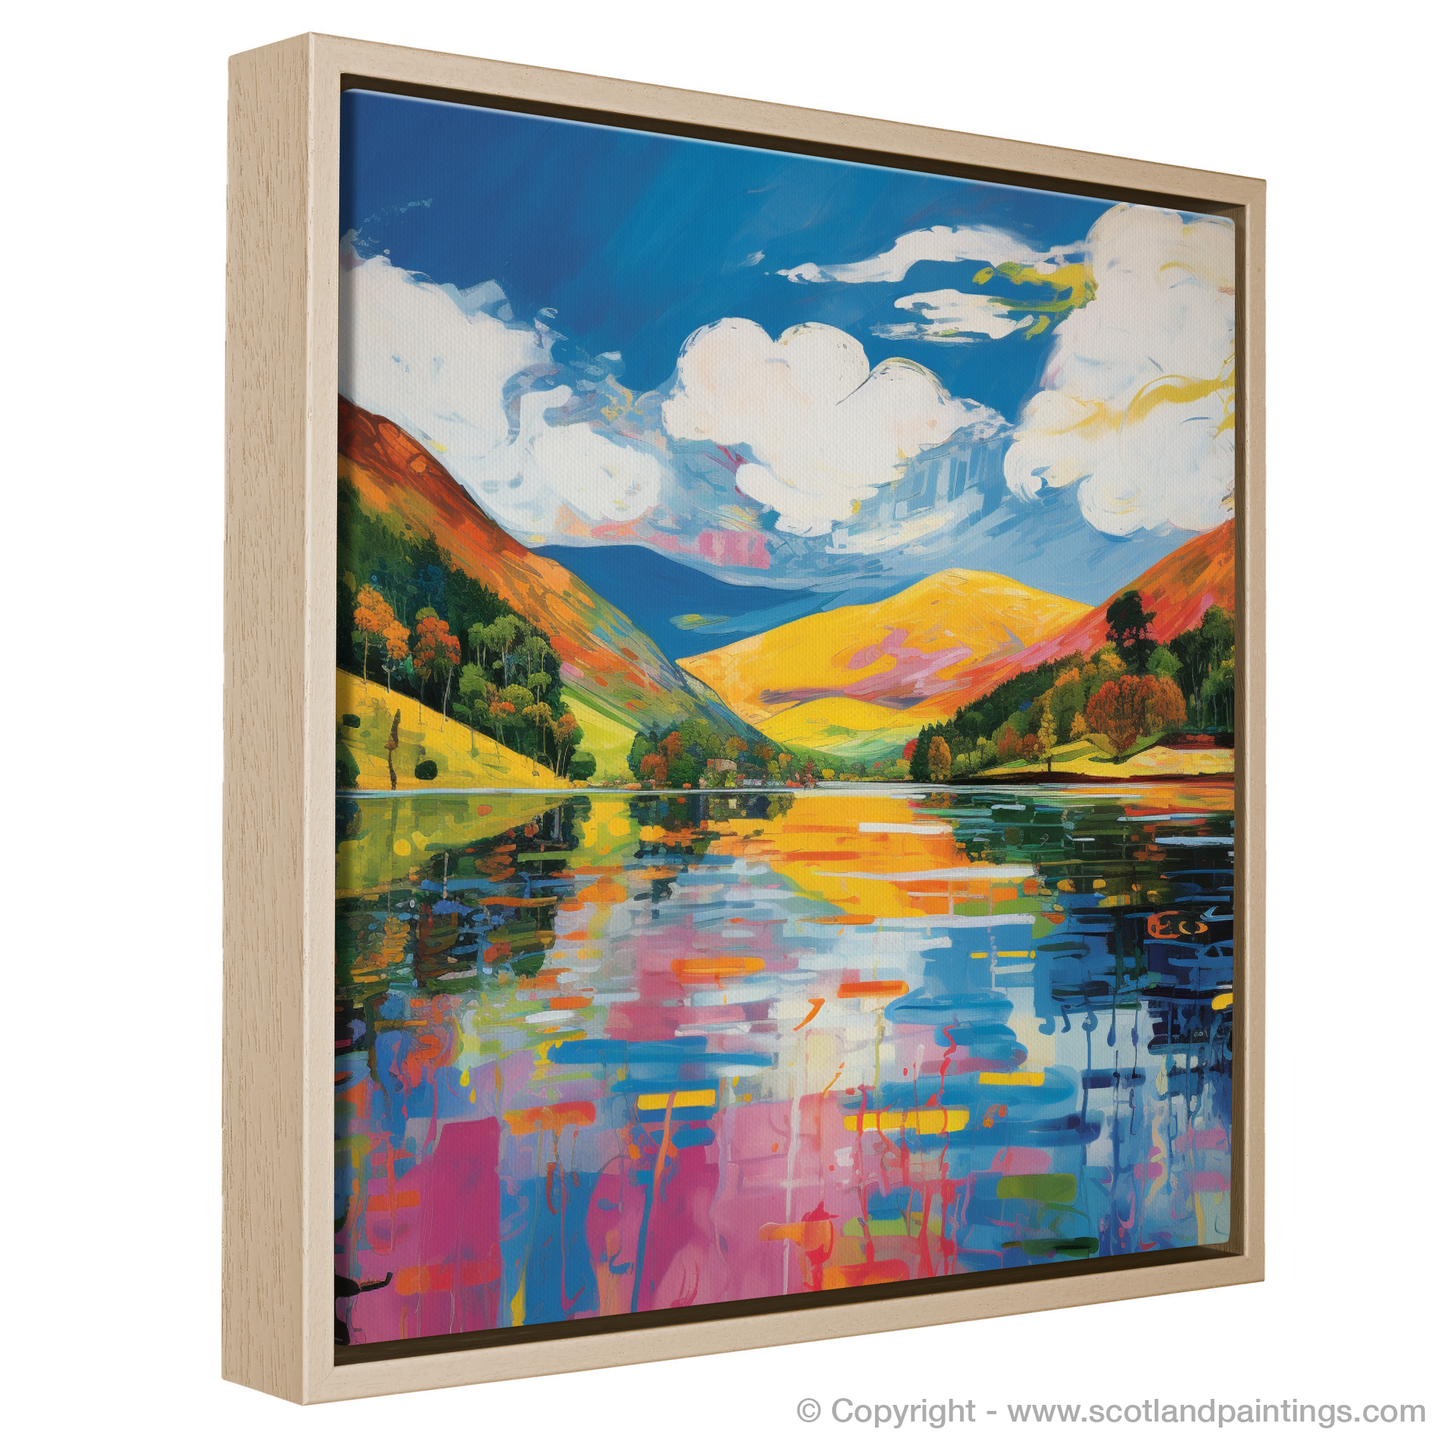 Vibrant Loch Earn: A Pop Art Rendition